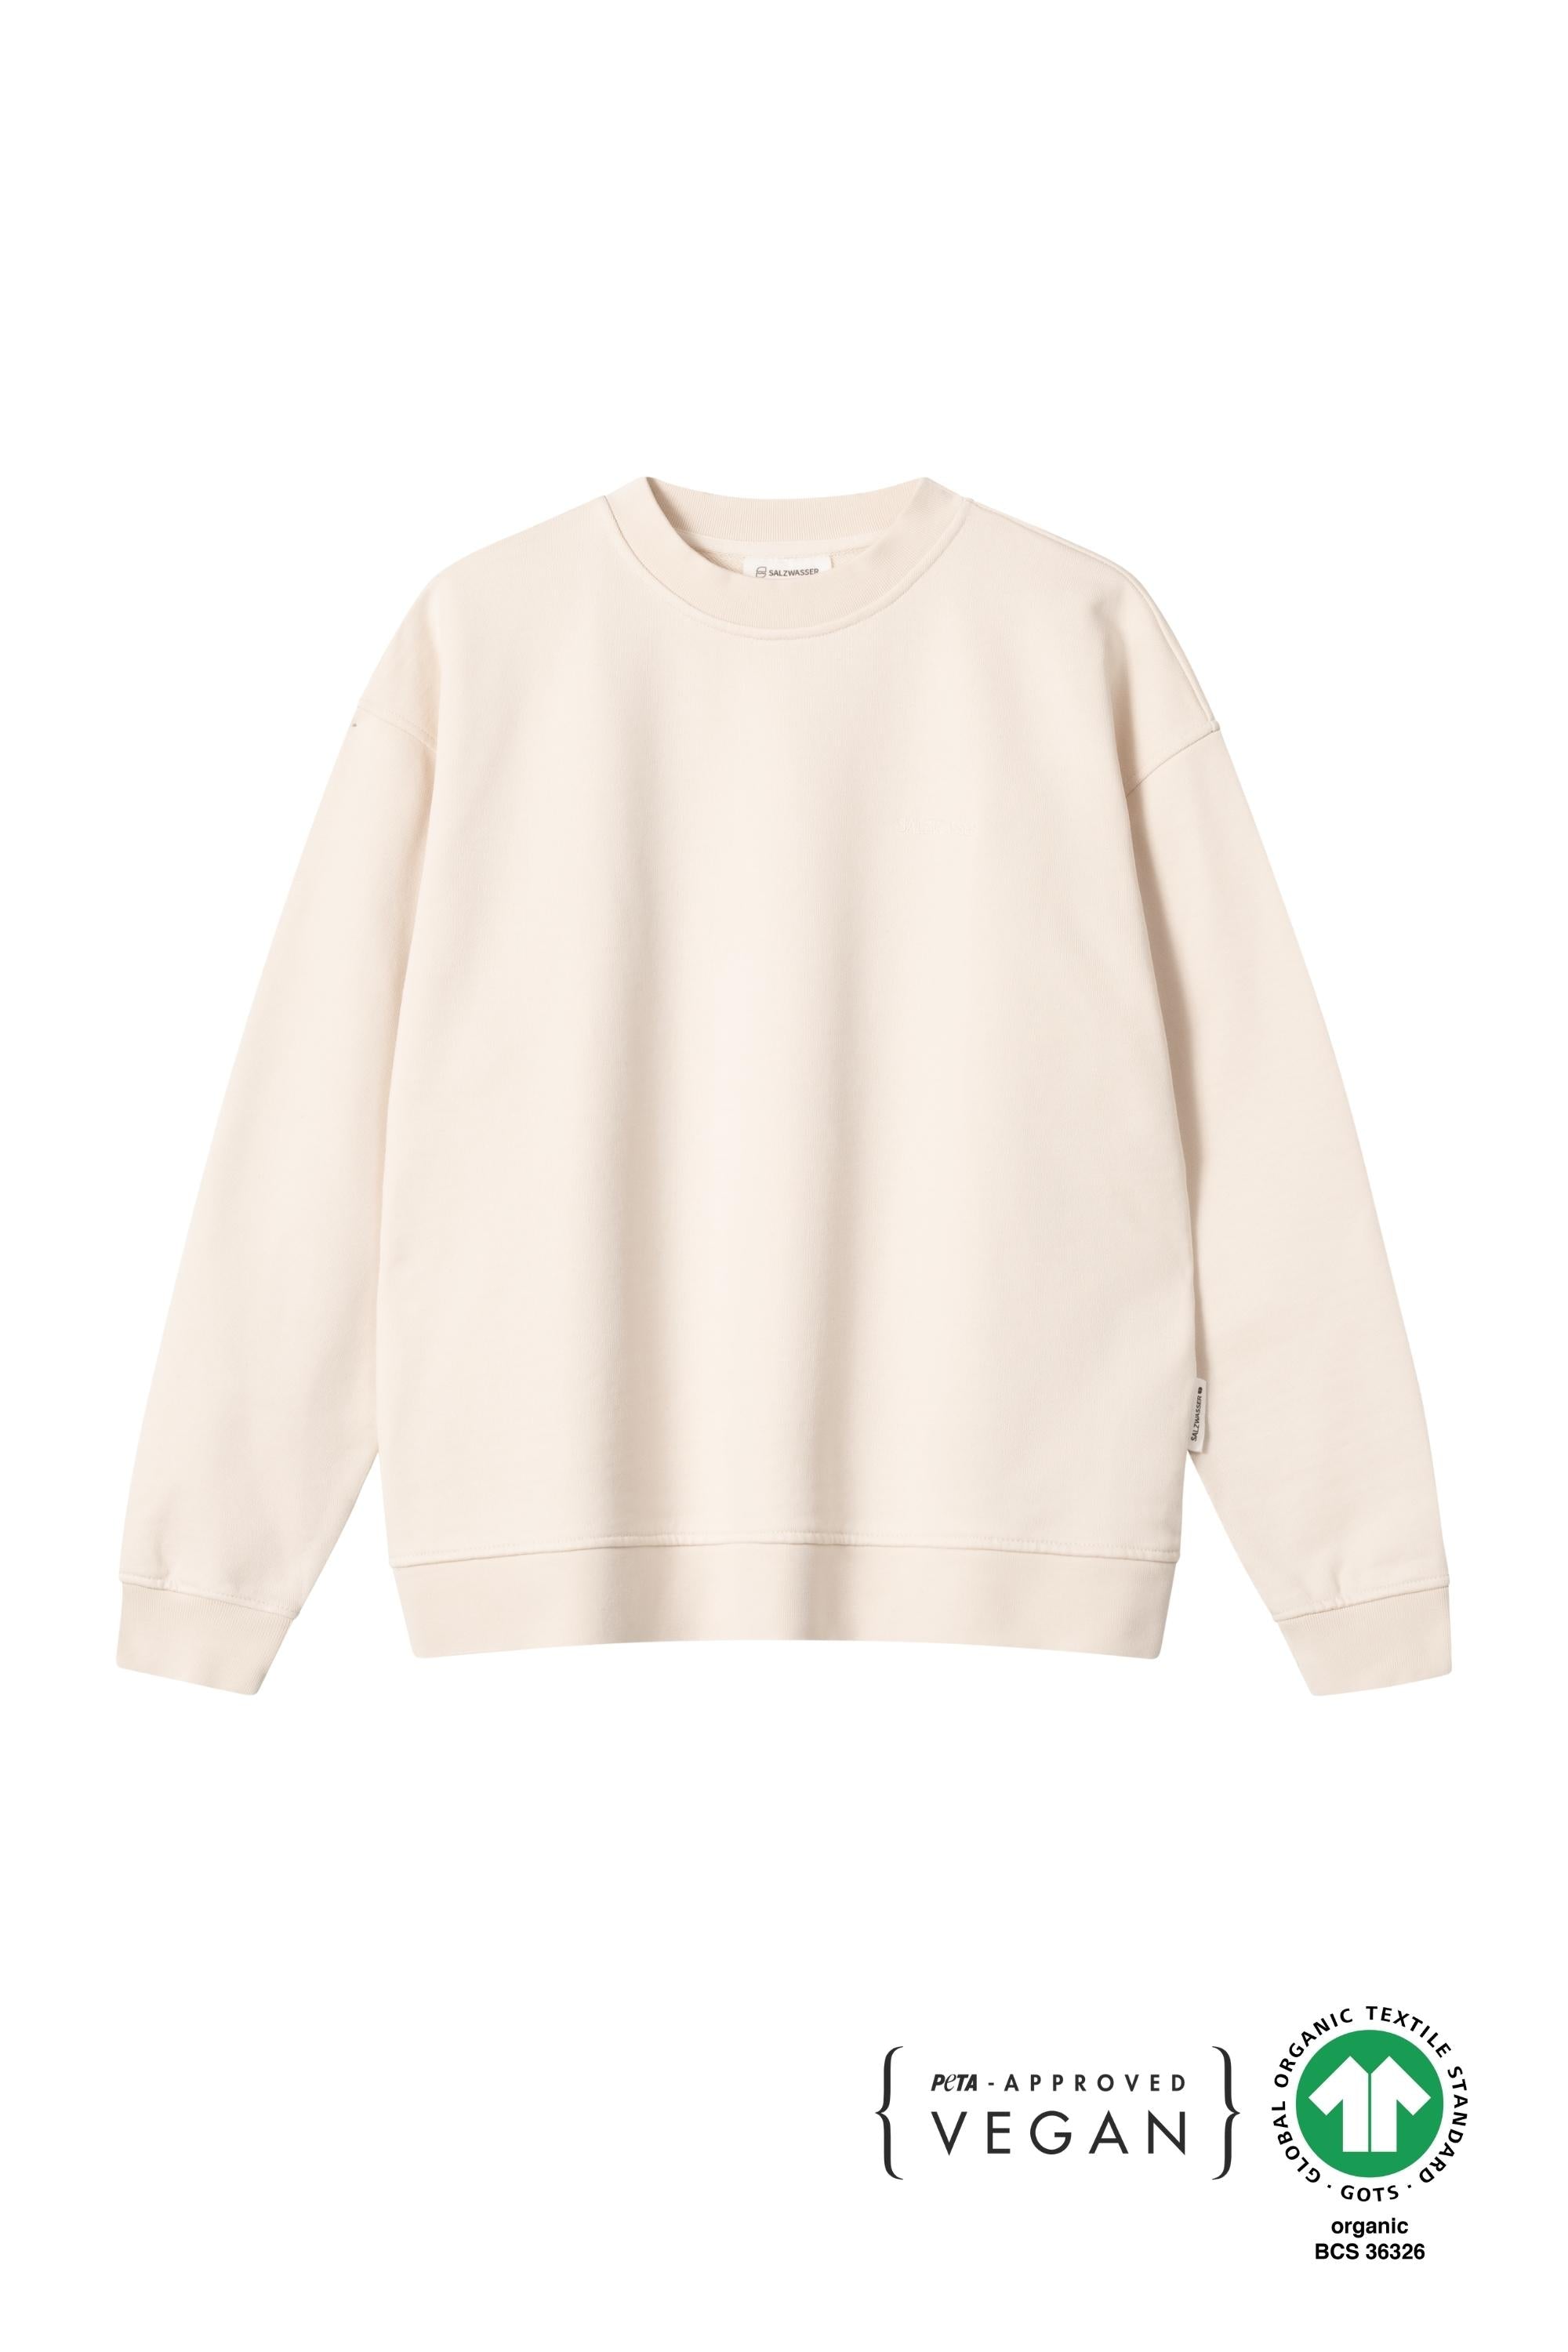 fair produzierter SALZWASSER Sweater in Off-White als Loose Fit vegan _women